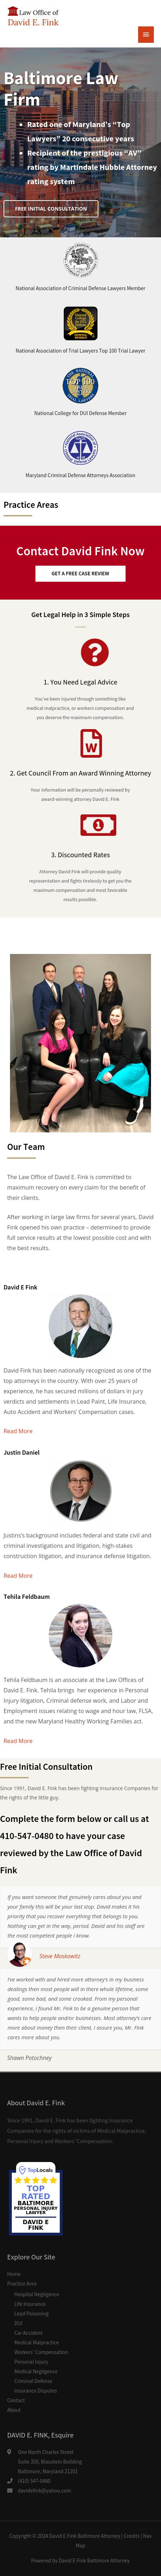 David Fink PA - Baltimore MD Lawyers